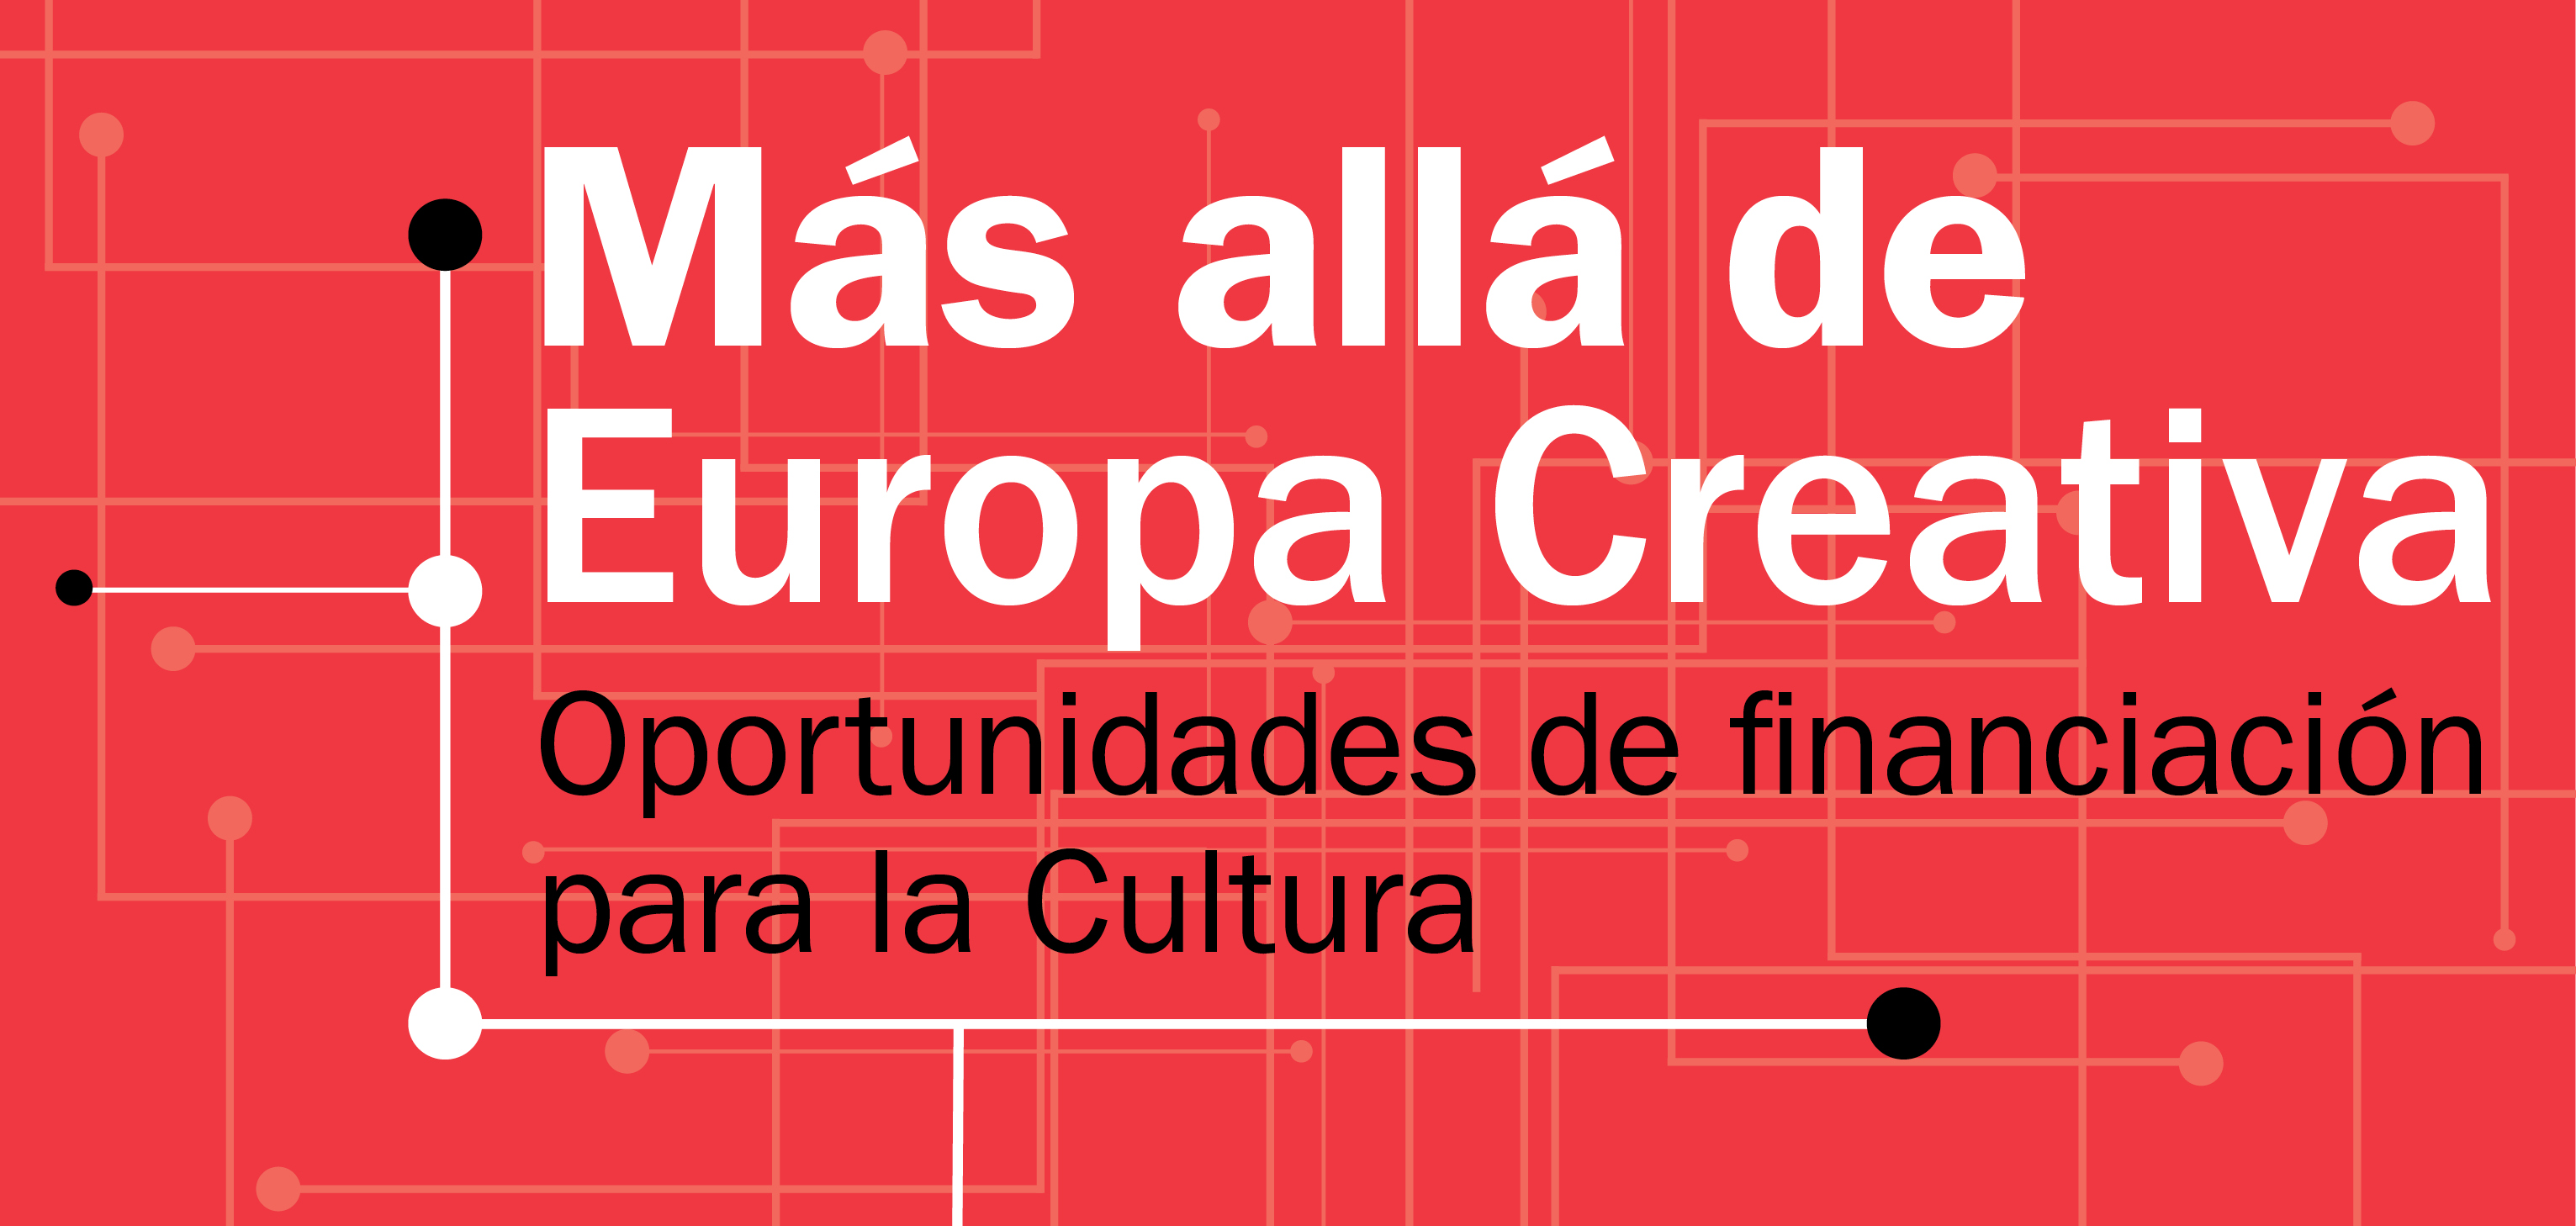 Au-delà d’europe créative Opportunités de financement pour la Culture